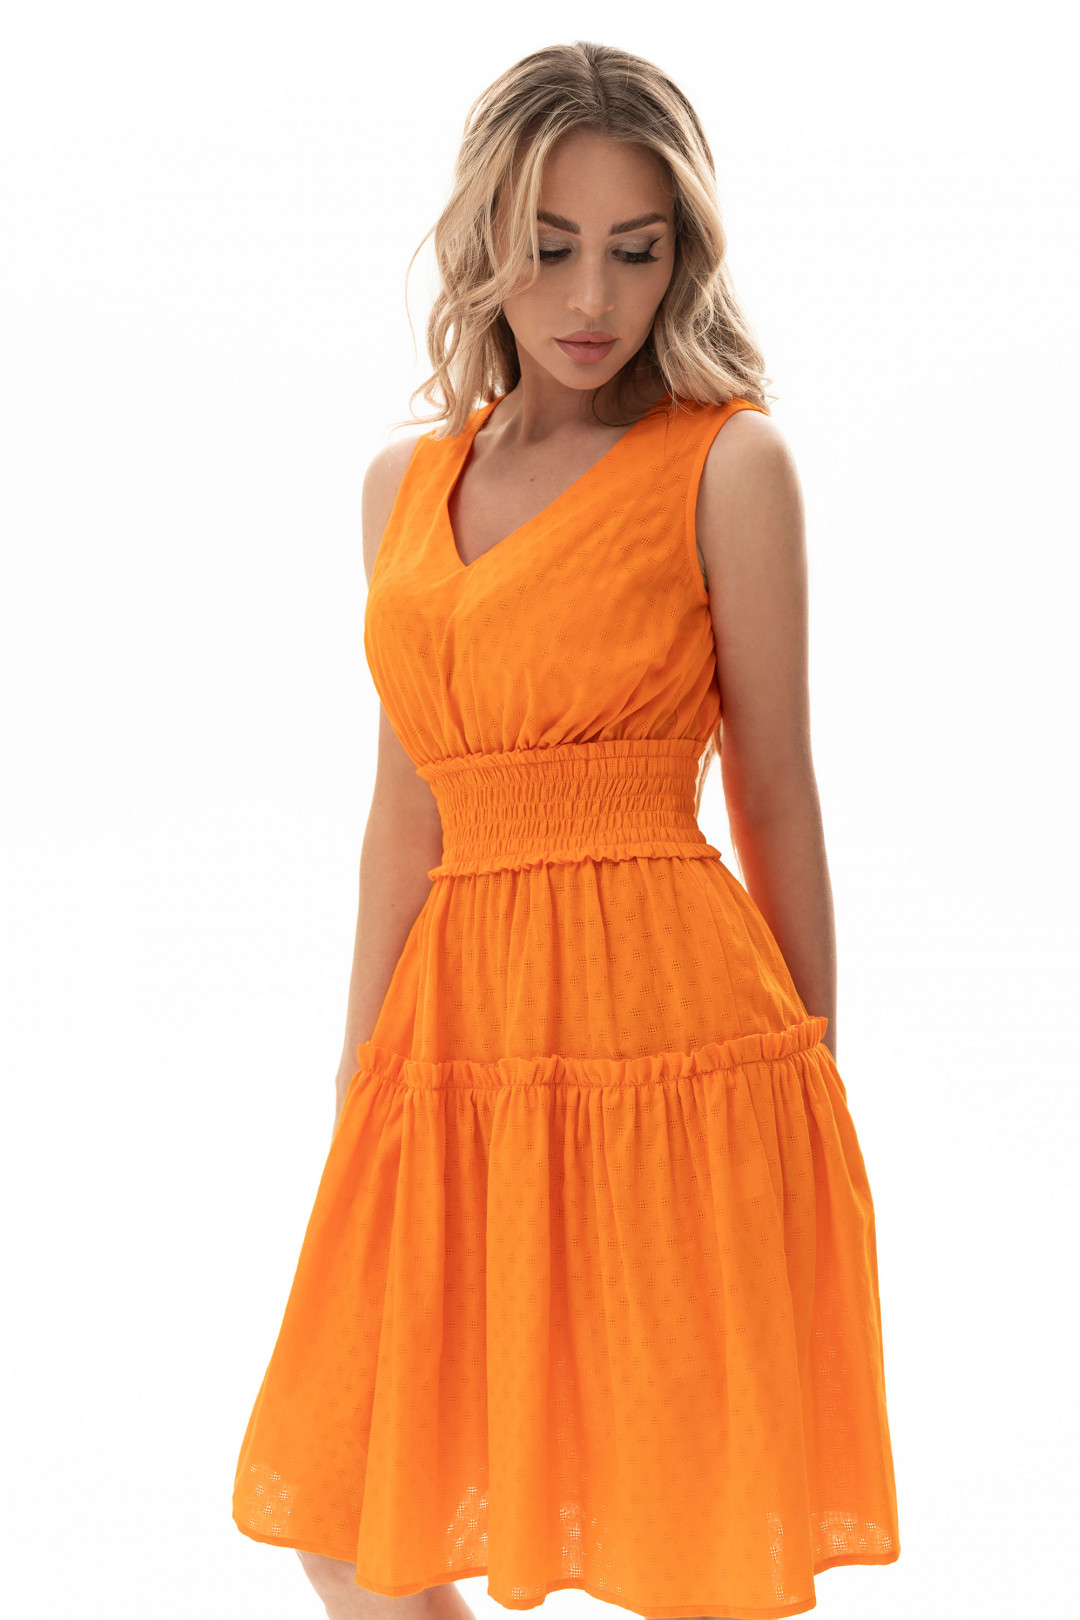 Платье Golden Valley 4823 оранжевый